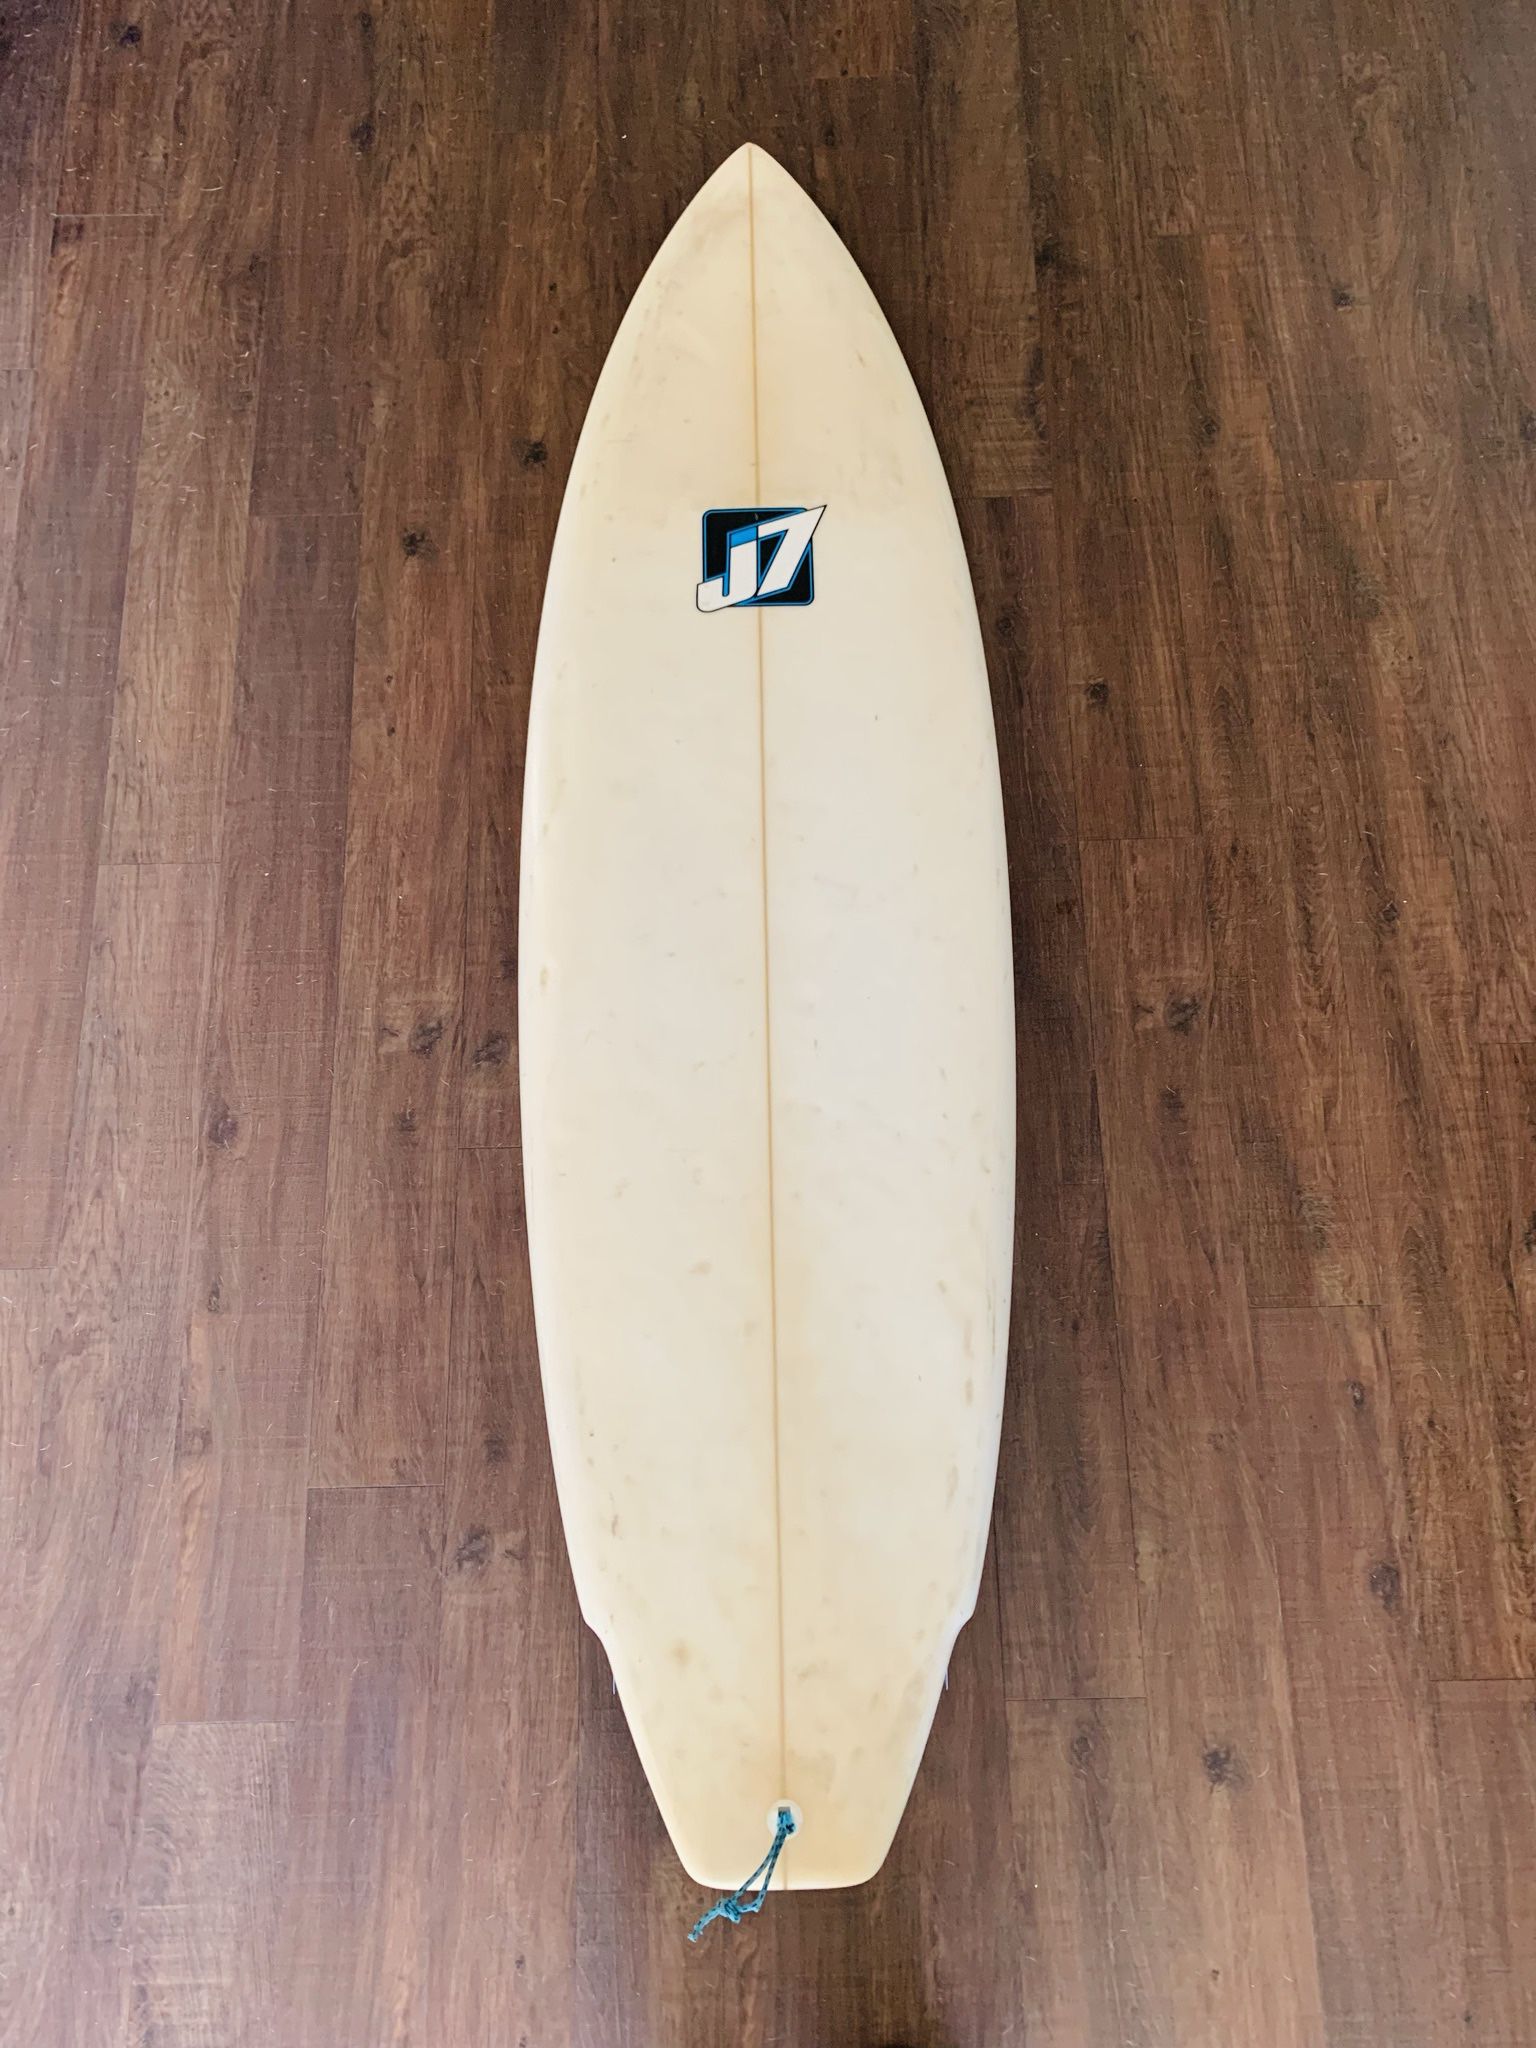 J7 Surfboard